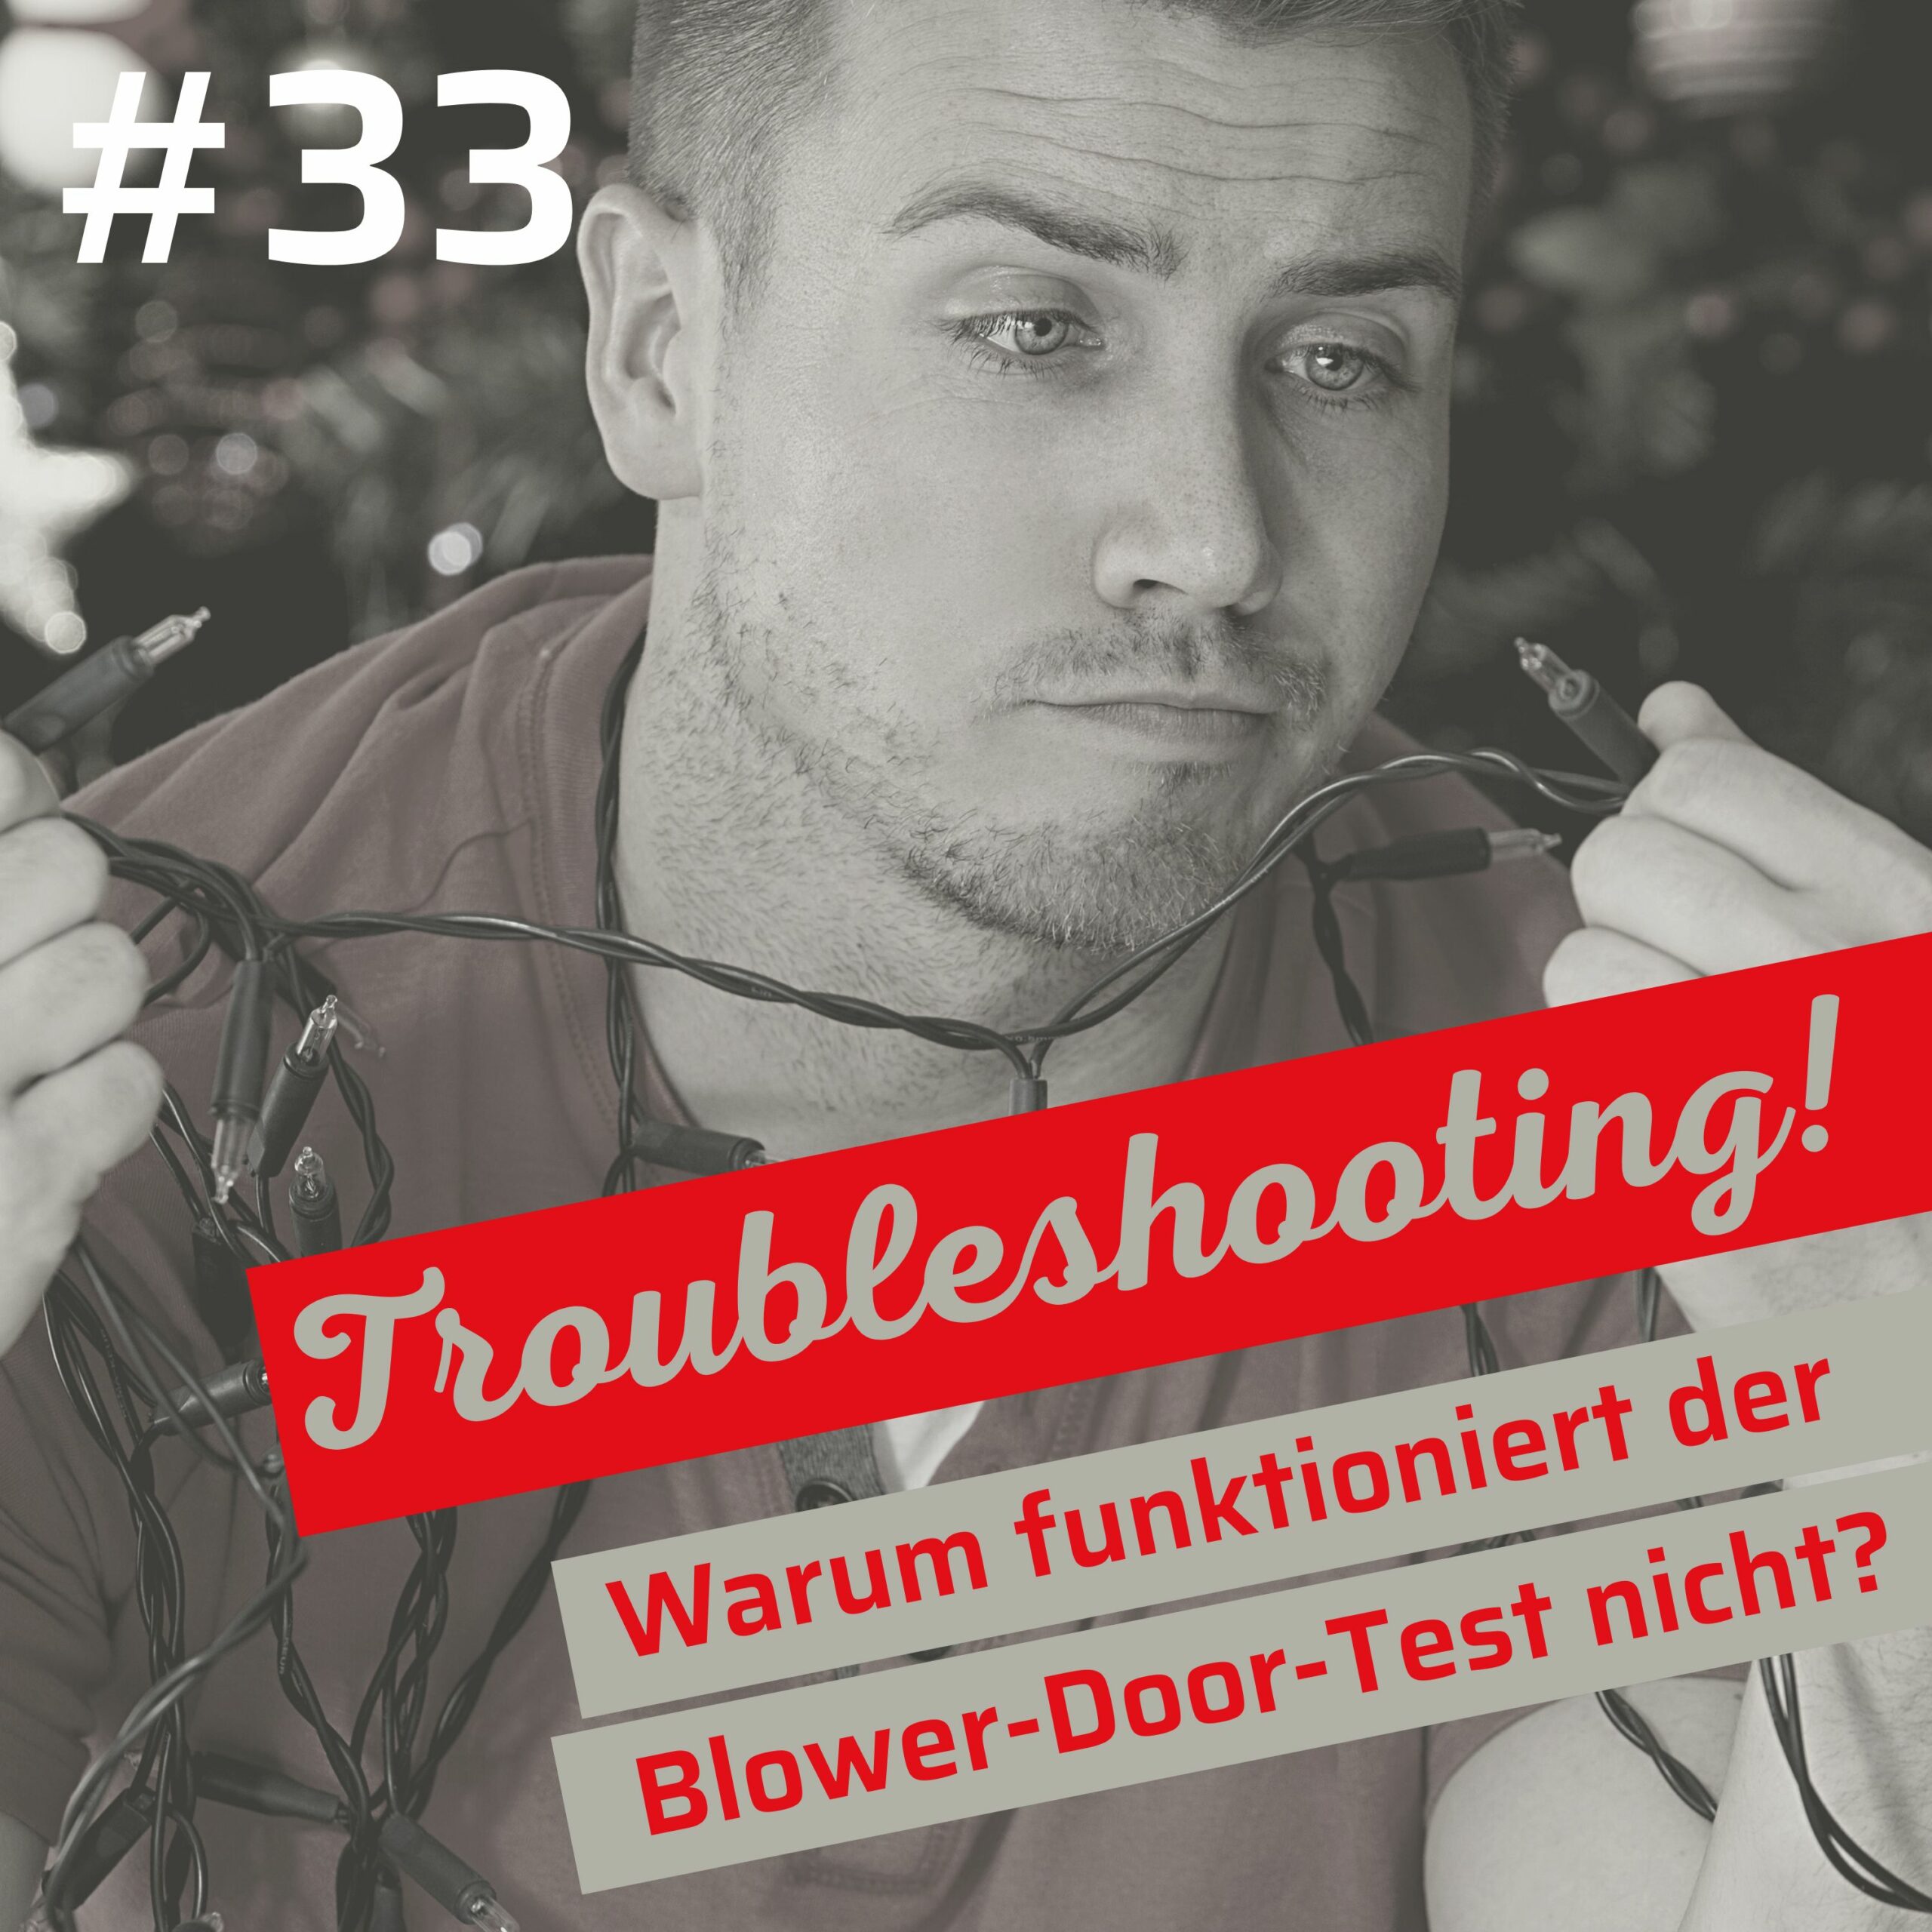 Troubleshooting: Erste Hilfe bei Blower-Door-Tests